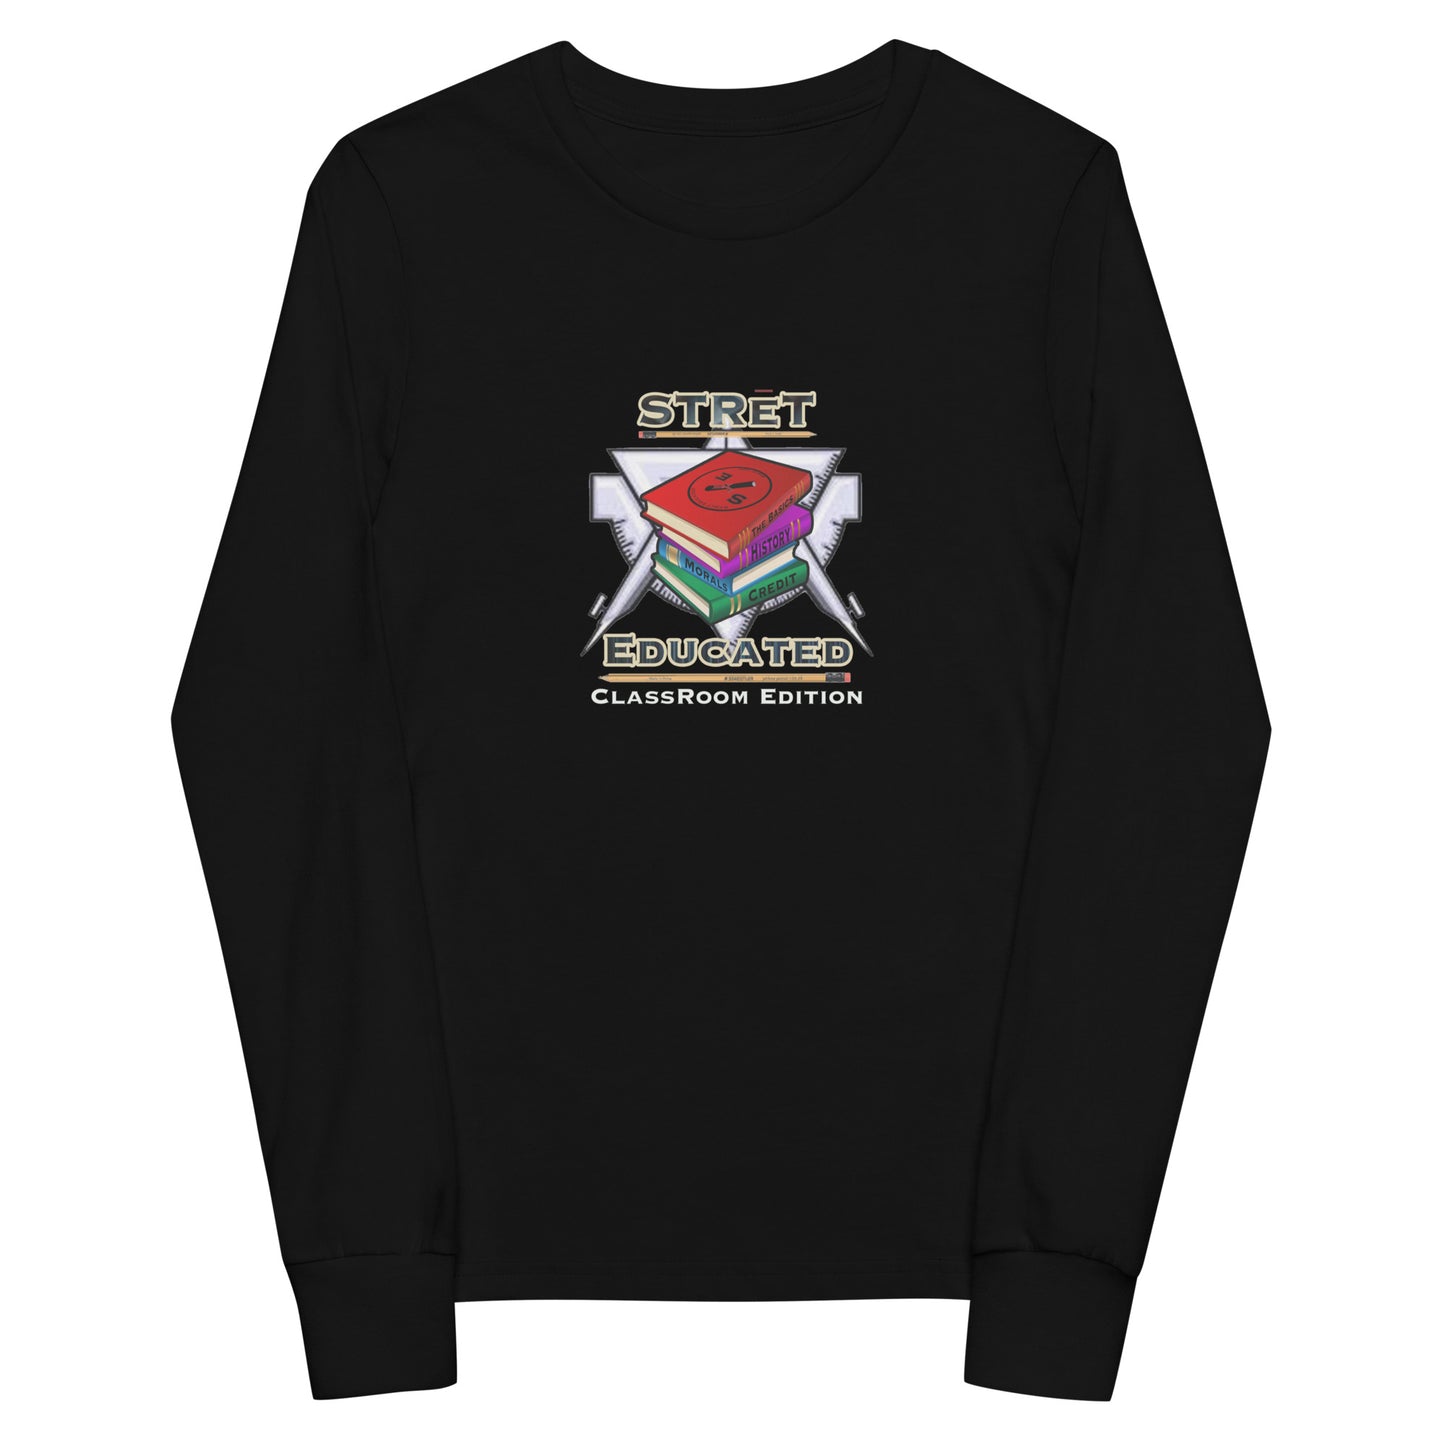 Classroom Edition Youth long sleeve Sweatshirt